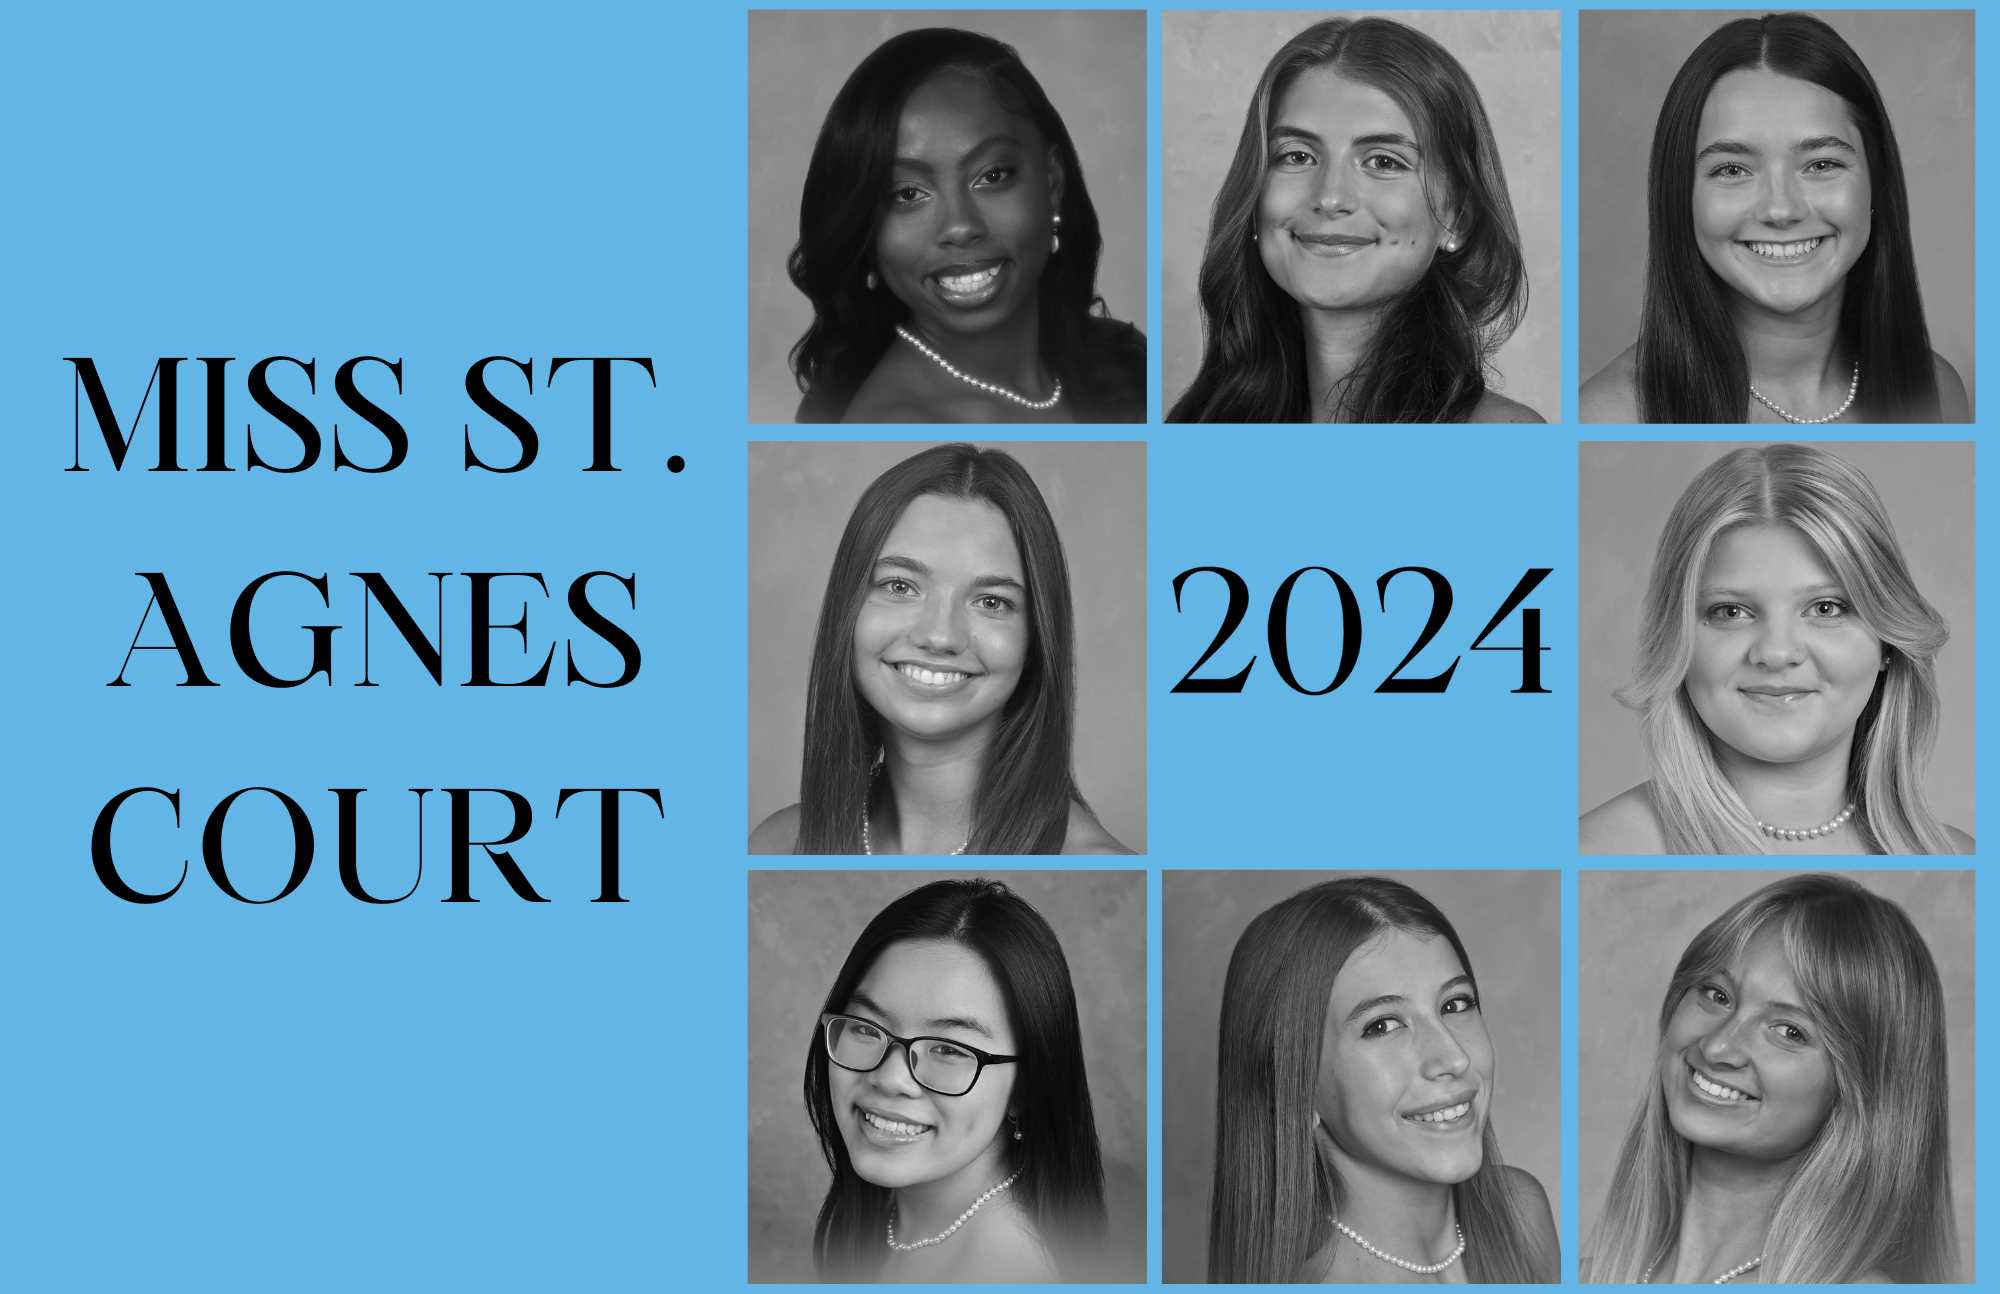 Meet the Class of 2024 Miss St. Agnes Court